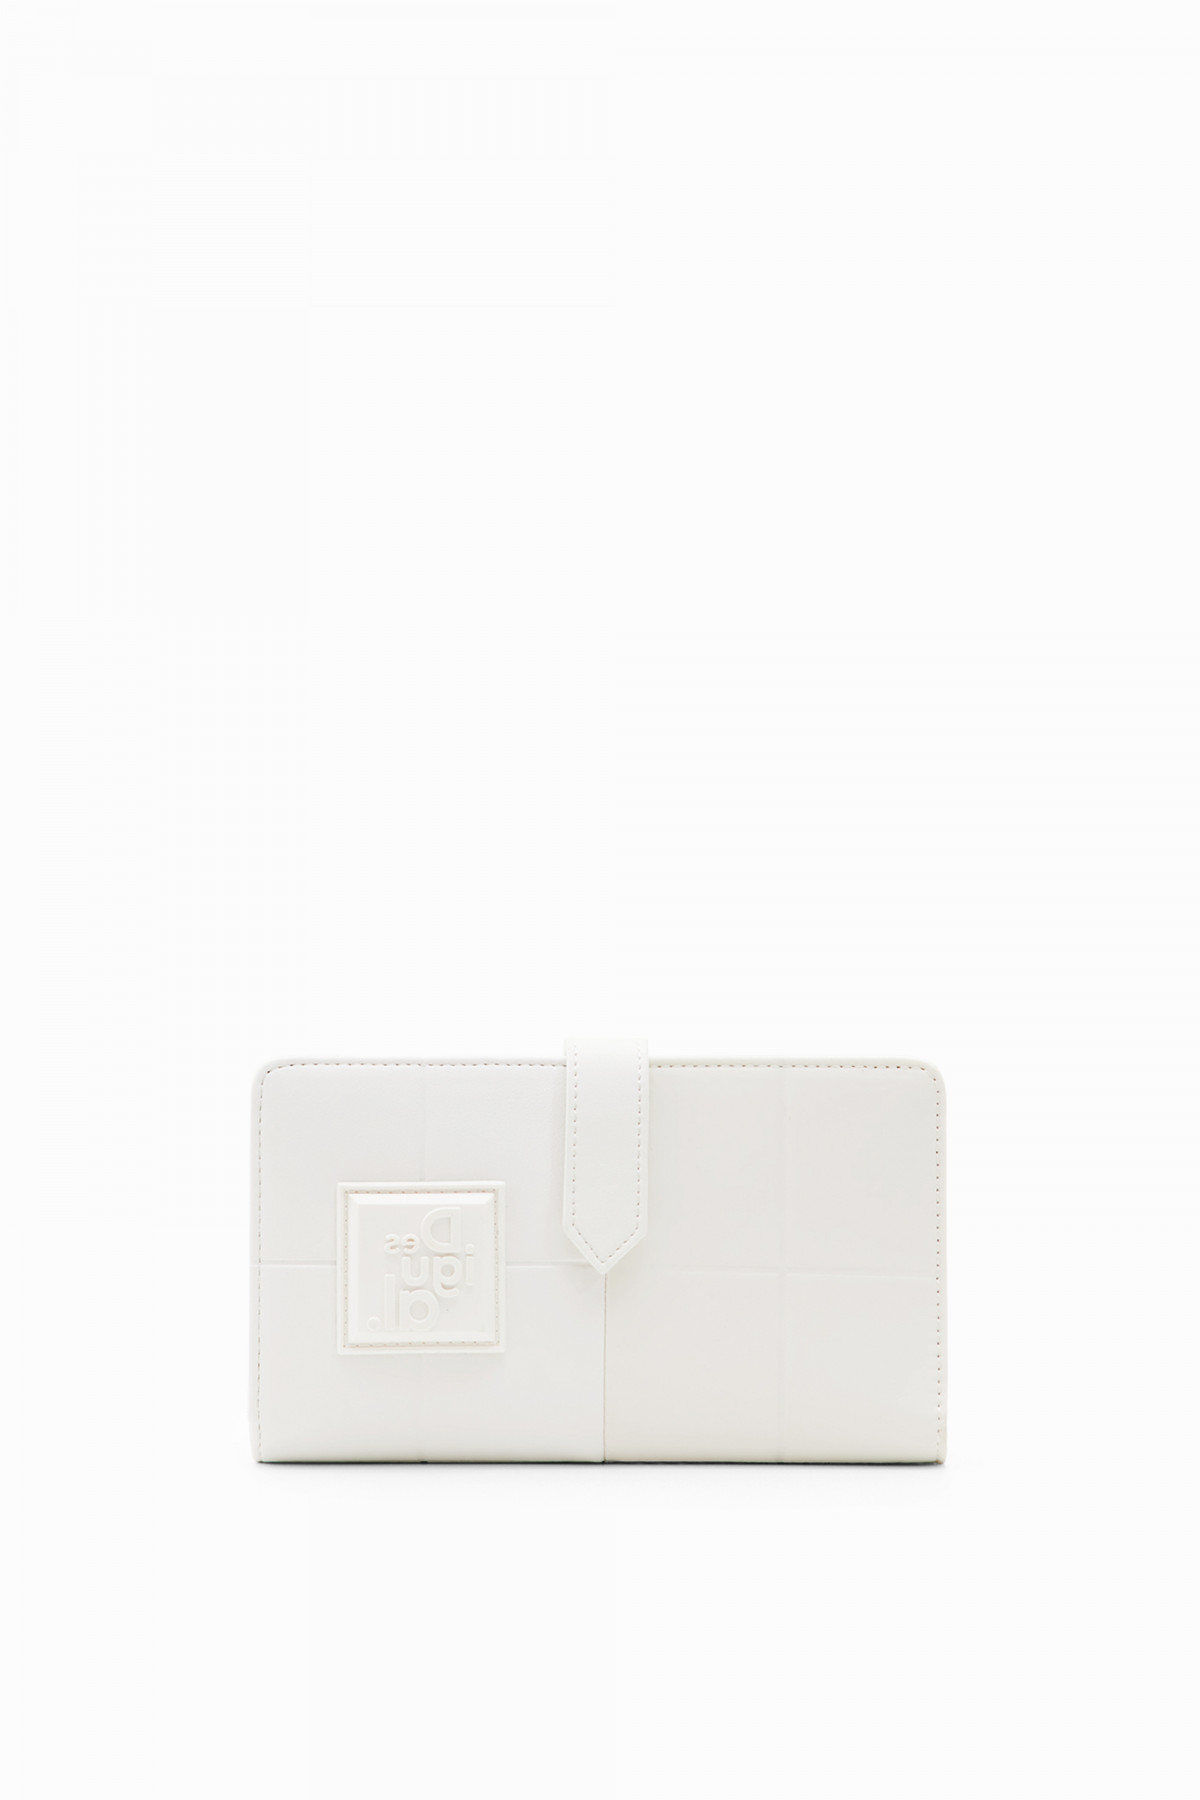 Desigual közepes pénztárca áthajtó kapcsos patchwork ihlette mintás fehér